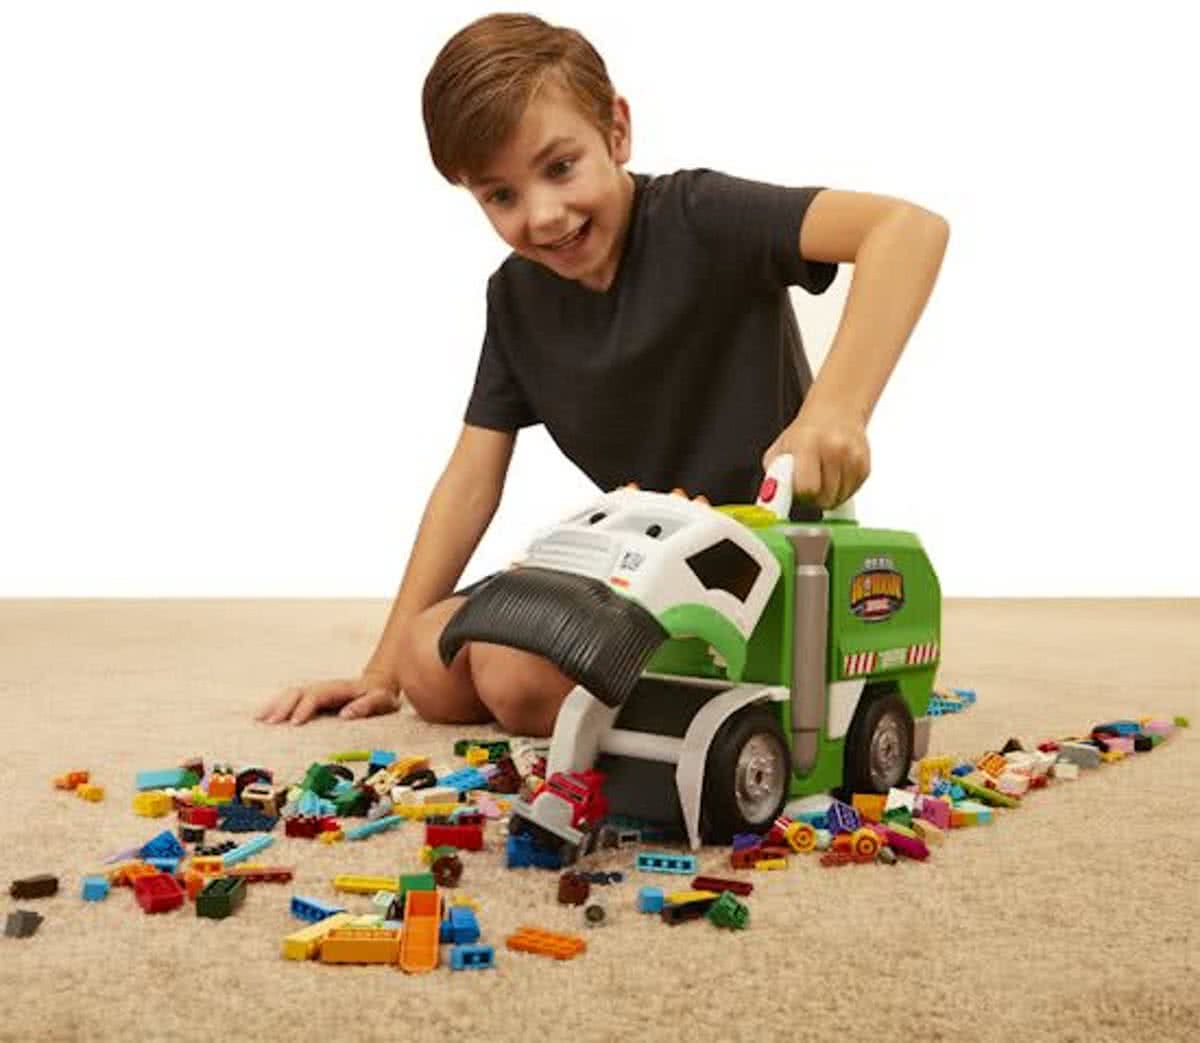 Dusty de vuilniswagen - Speelgoedvoertuig